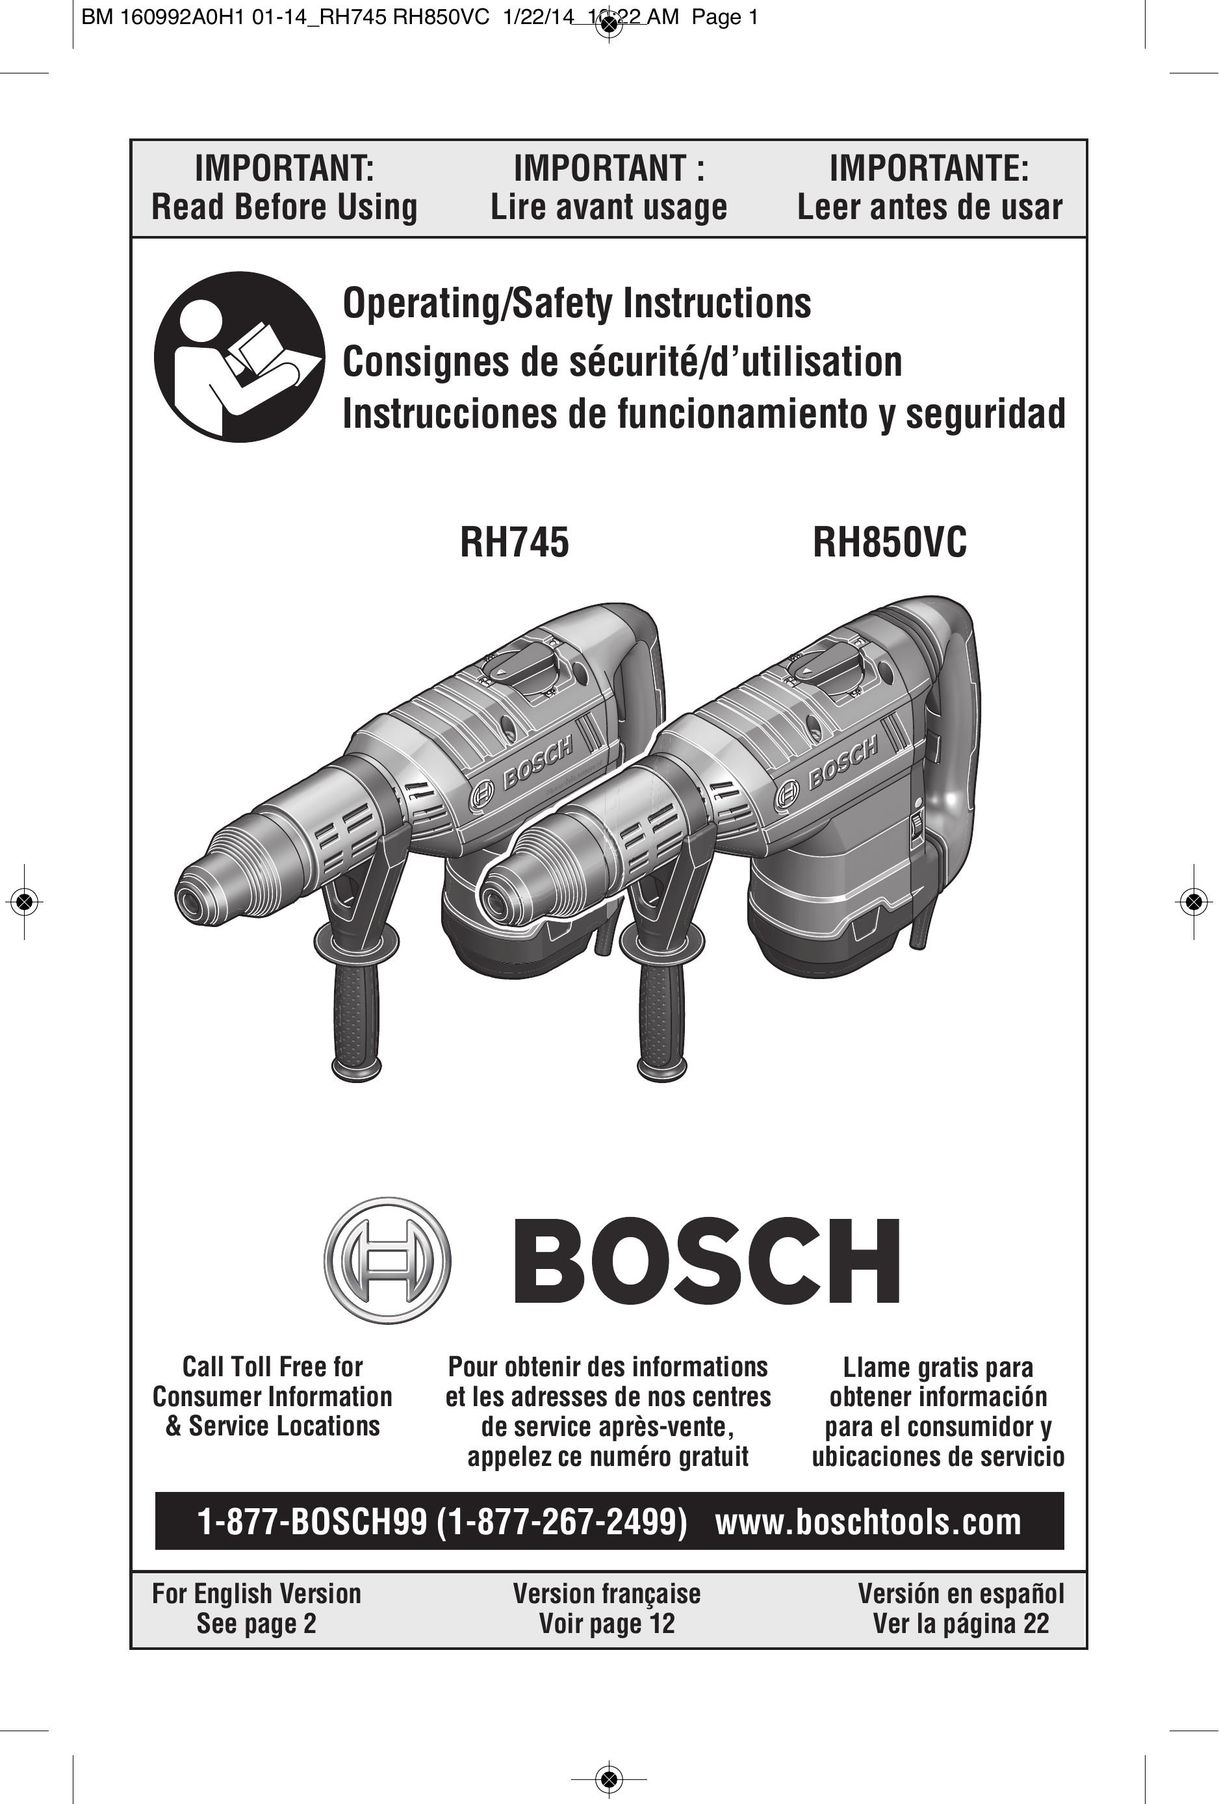 Bosch Power Tools RH850VC Power Hammer User Manual